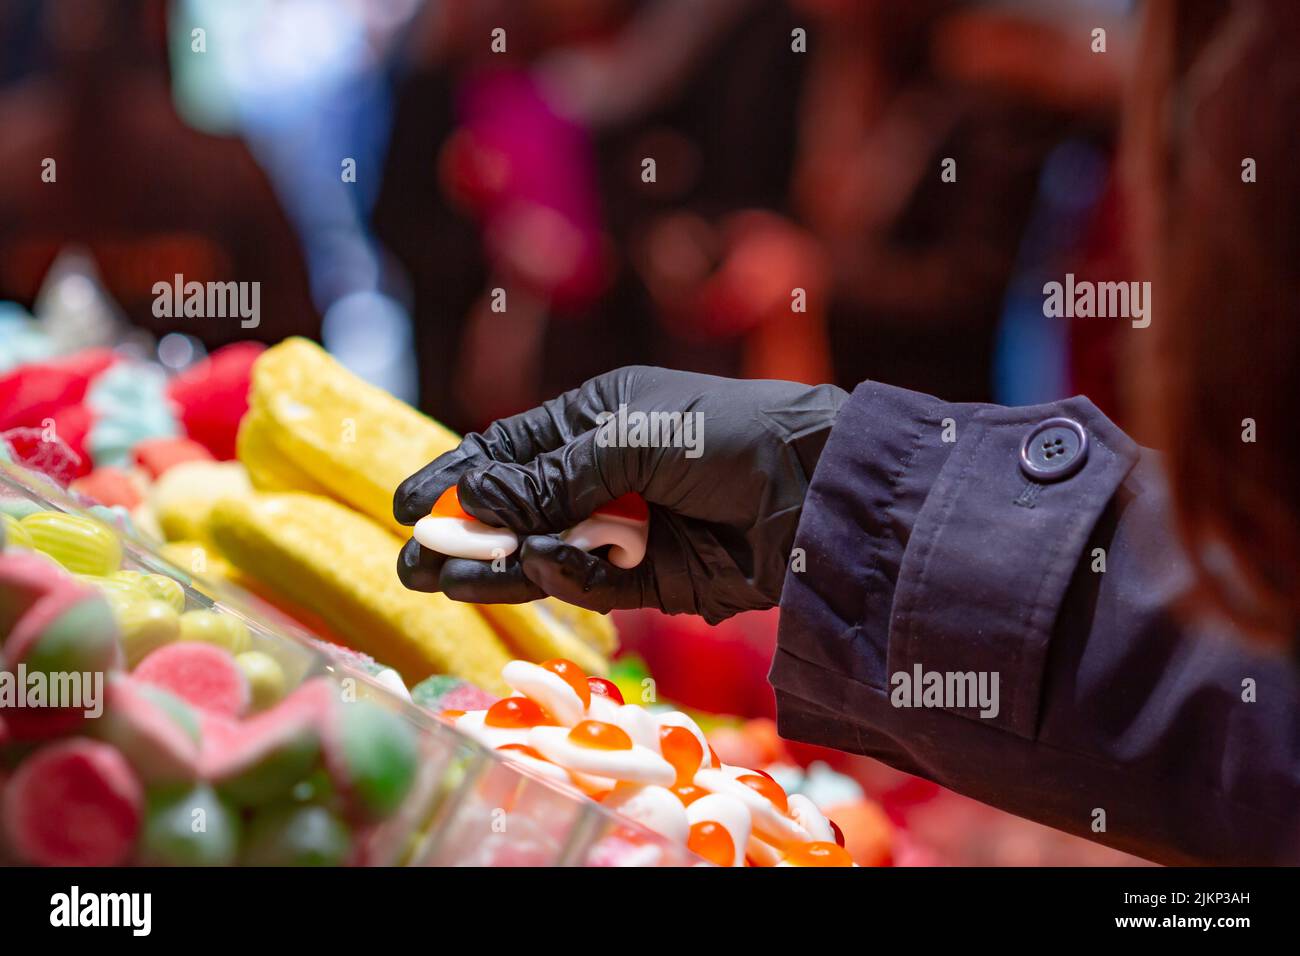 Magasin de bonbons, la main non reconnaissable ramasser des bonbons dans un marché à Séville (Espagne). Banque D'Images